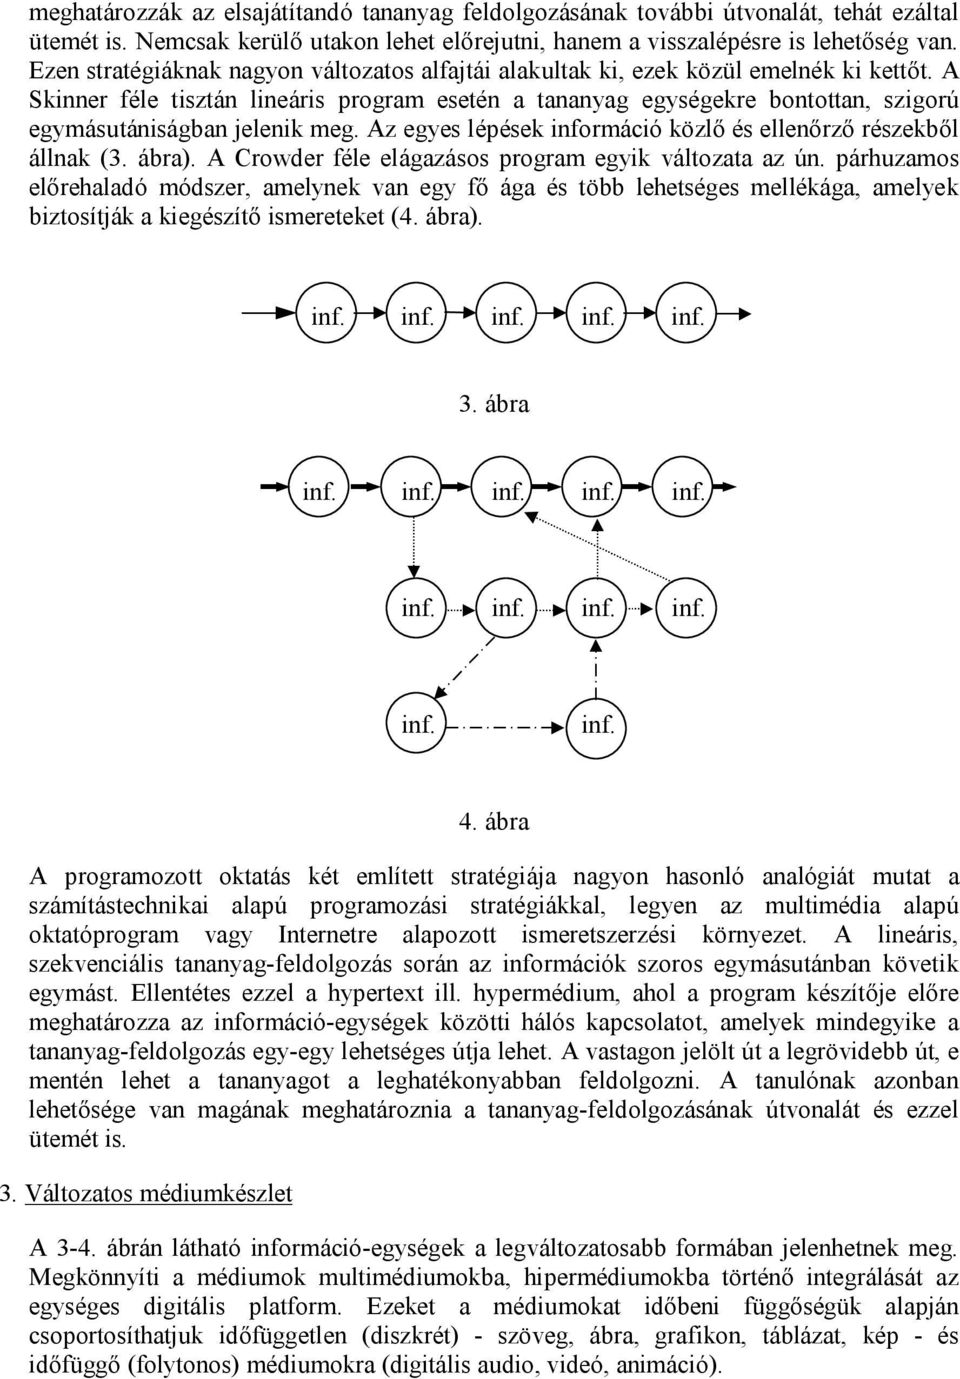 A Skinner féle tisztán lineáris program esetén a tananyag egységekre bontottan, szigorú egymásutániságban jelenik meg. Az egyes lépések információ közlő és ellenőrző részekből állnak (3. ábra).